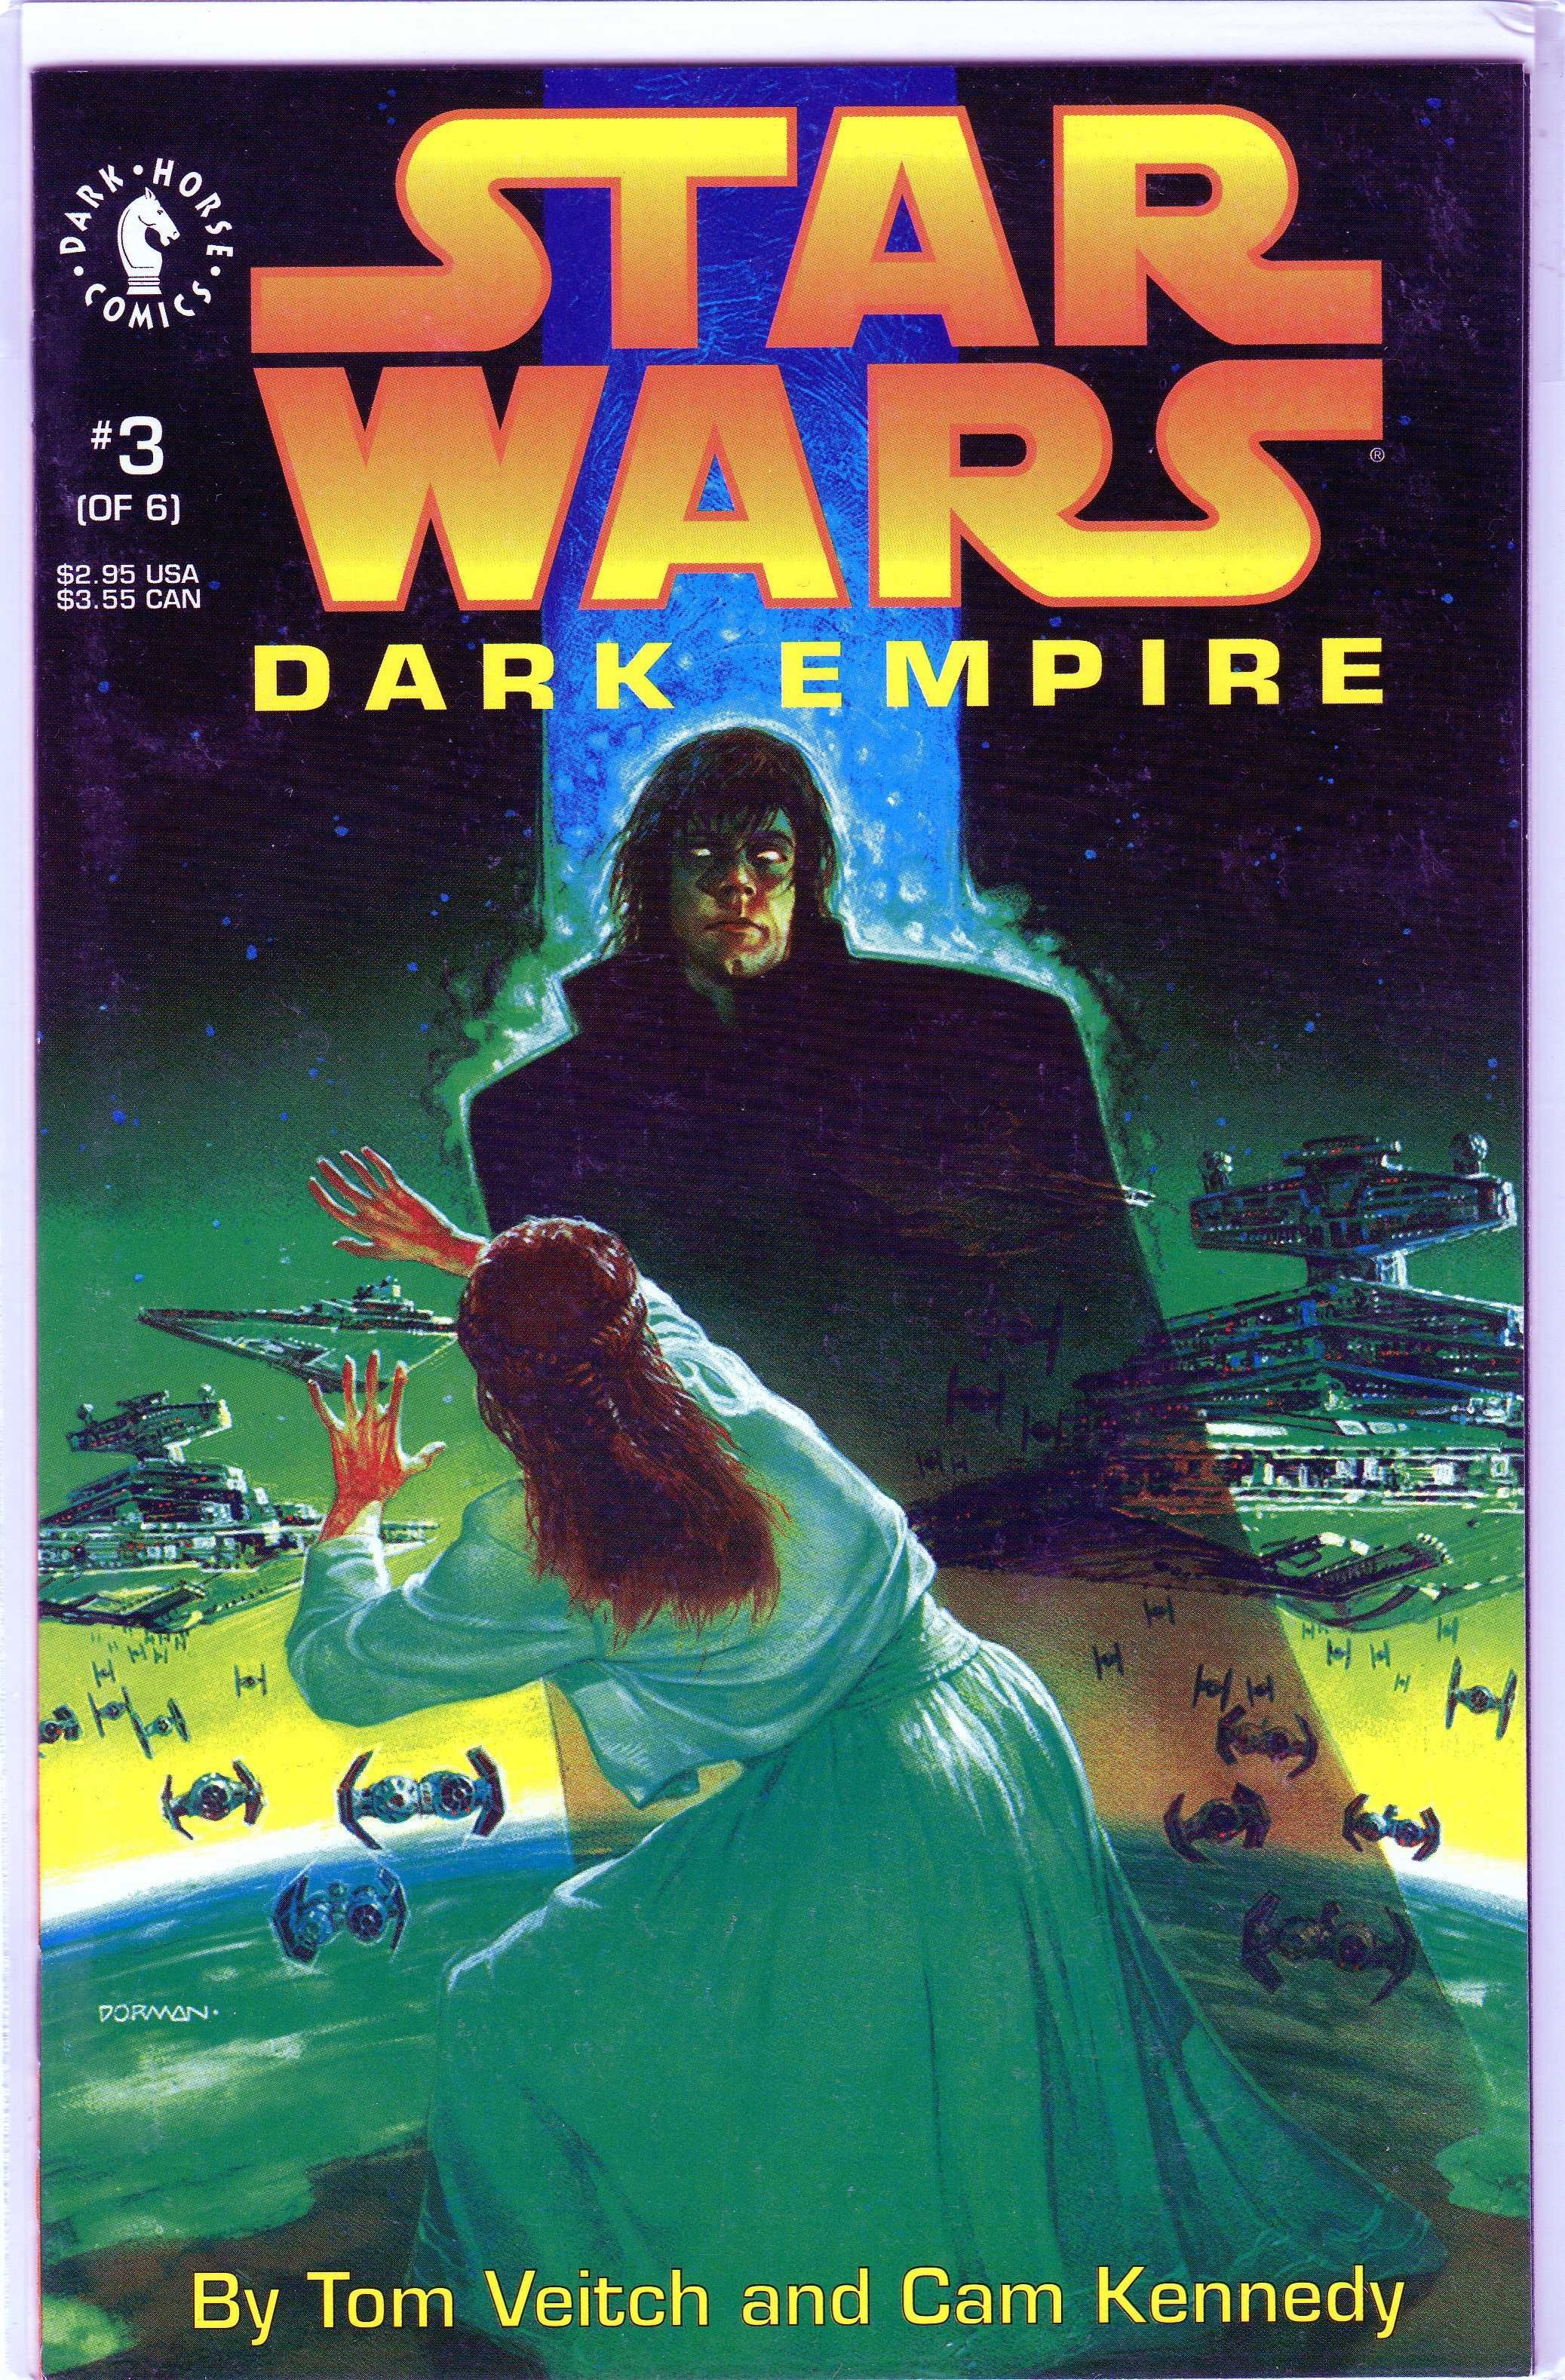 Star Wars Dark Empire #1-6 seria de 6 comicsuri americane